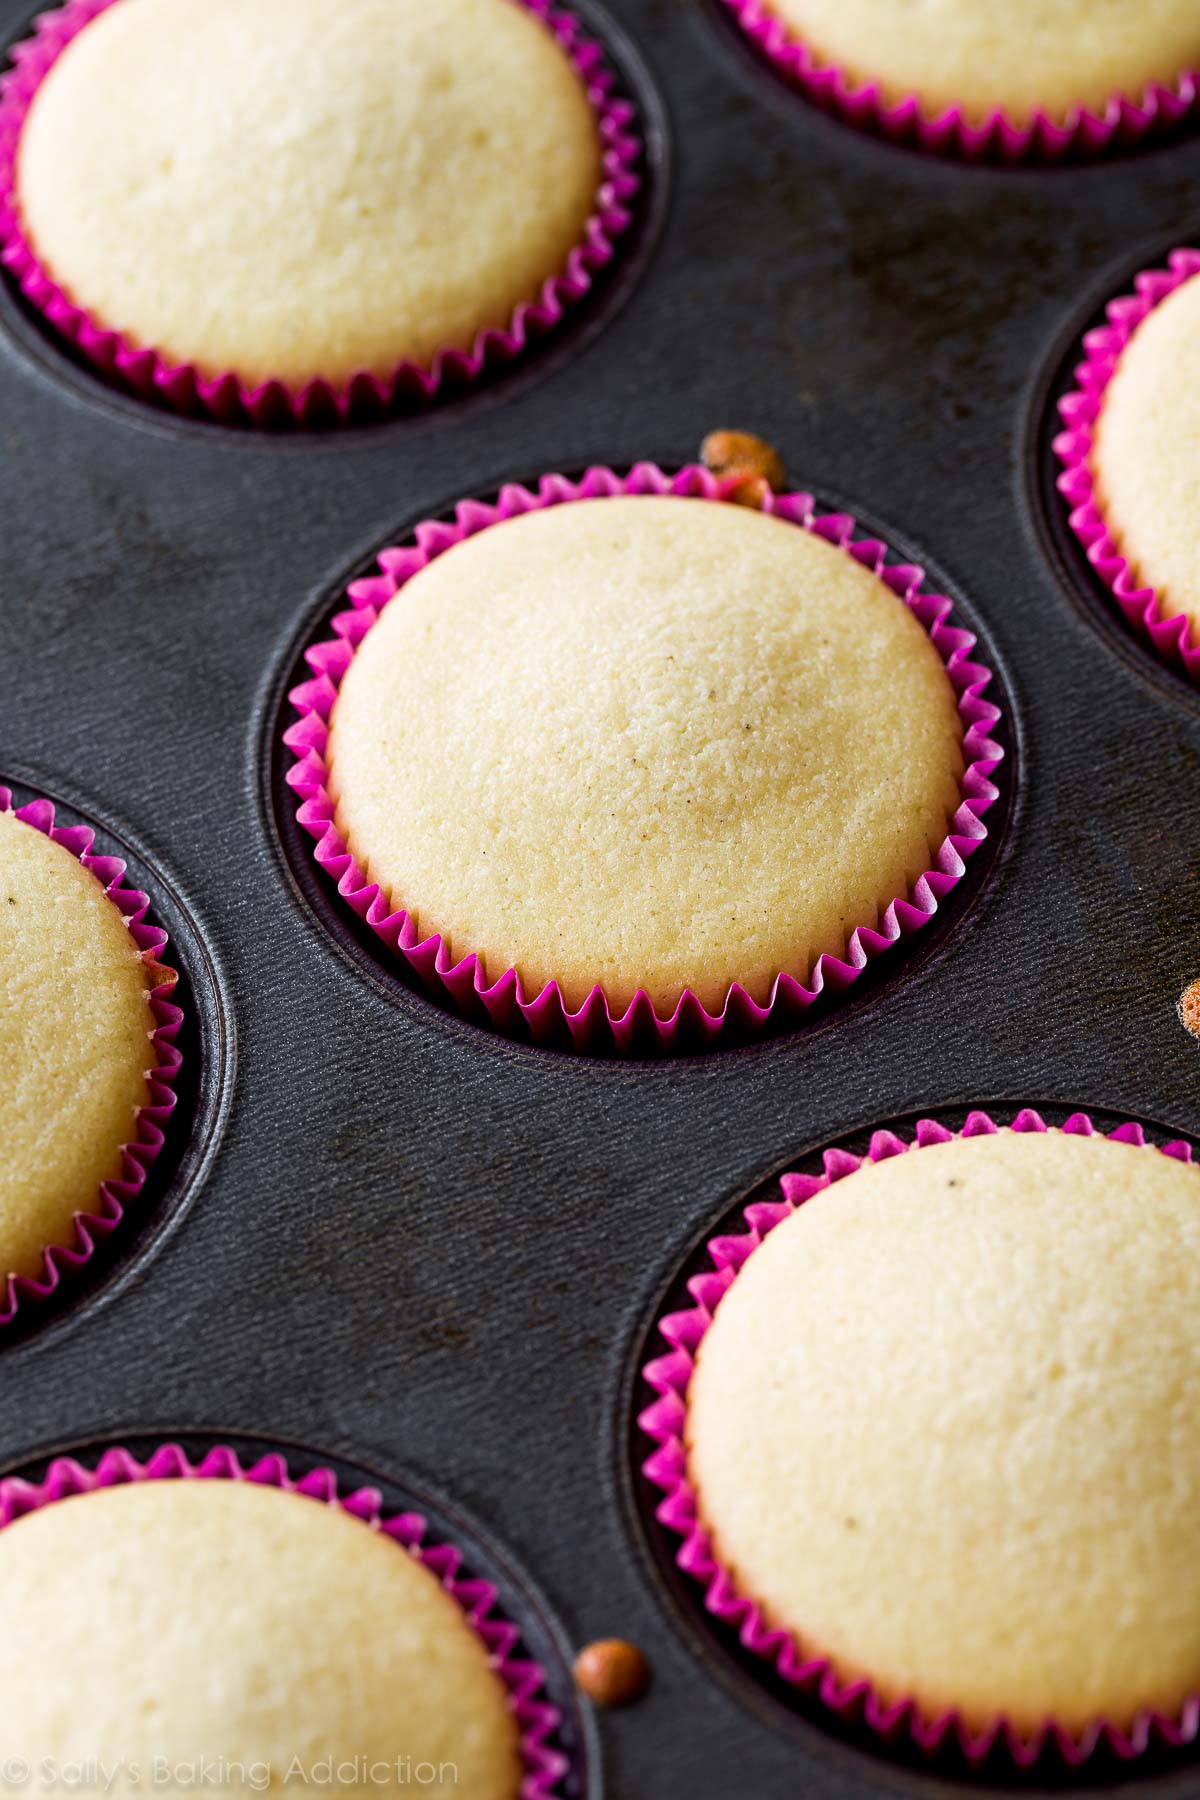 Les 10 meilleurs conseils pour préparer les meilleurs cupcakes! Trucs et astuces sur sallysbakingaddiction.com